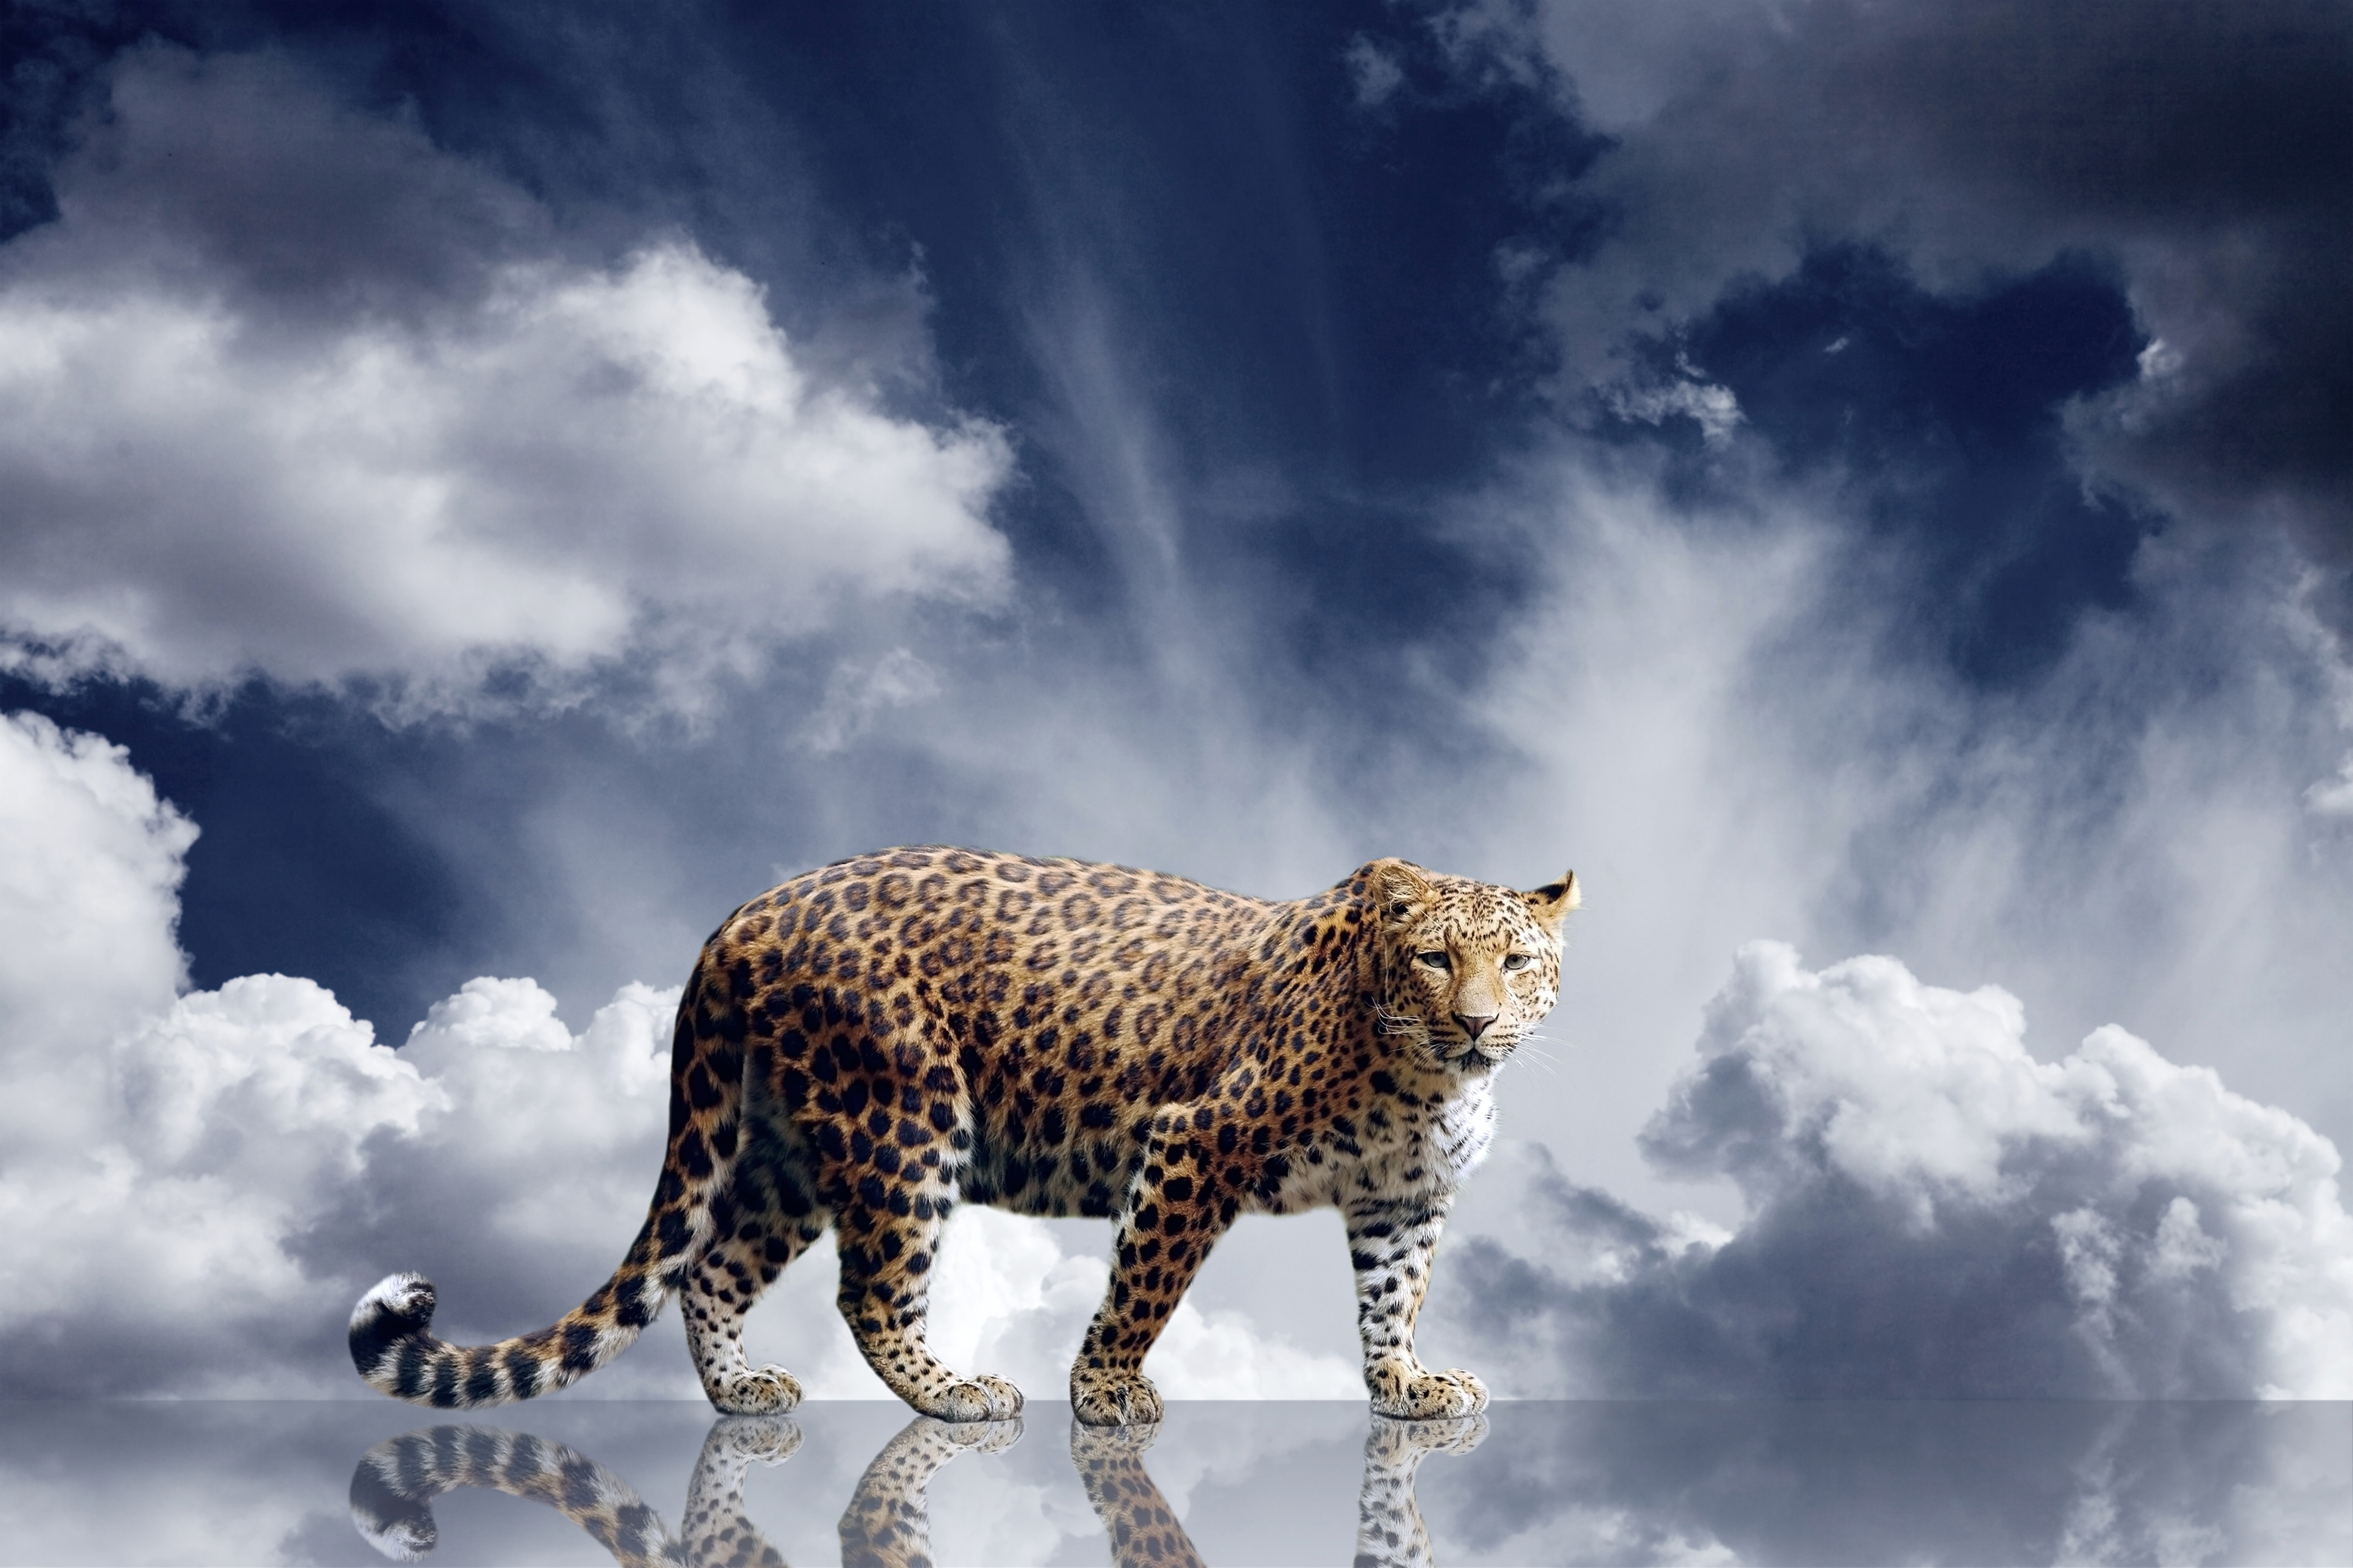 Скачать обои бесплатно Леопард, Животные, Кошки картинка на рабочий стол ПК